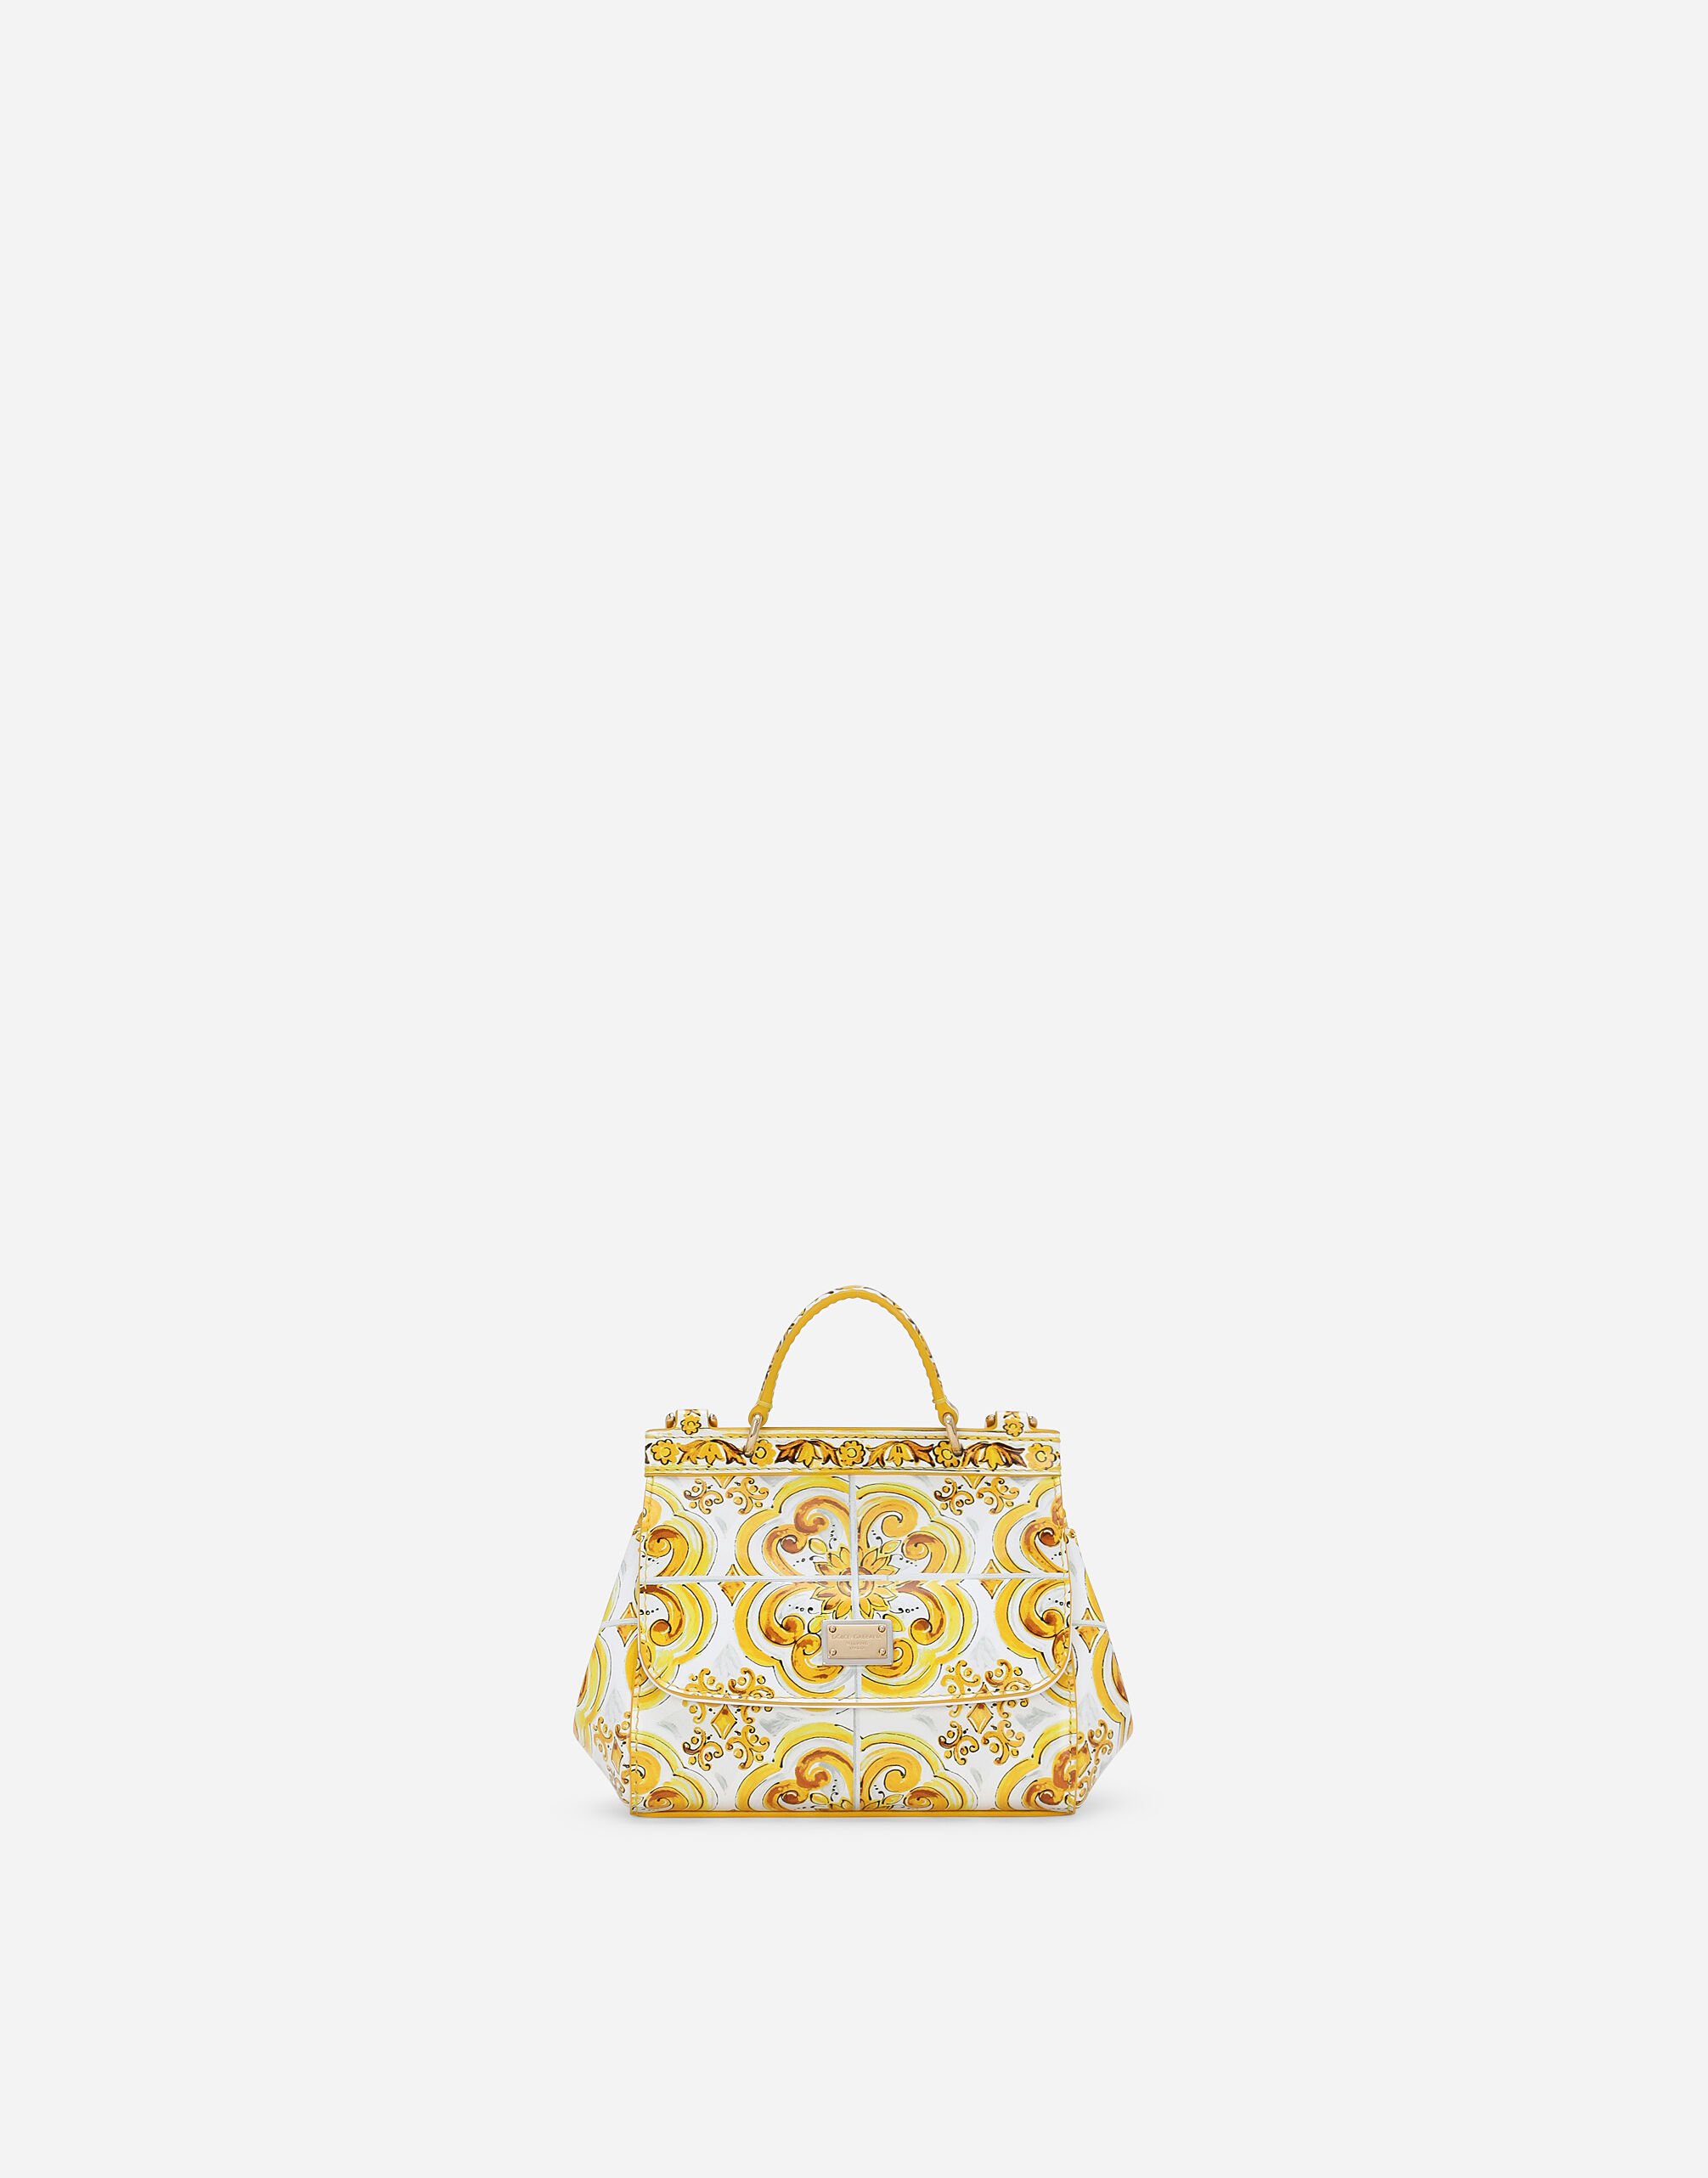 Dolce & Gabbana Tasche Sicily aus glänzendem Kalbsleder mit gelbem Majolika-Print Gelb EB0252A7131